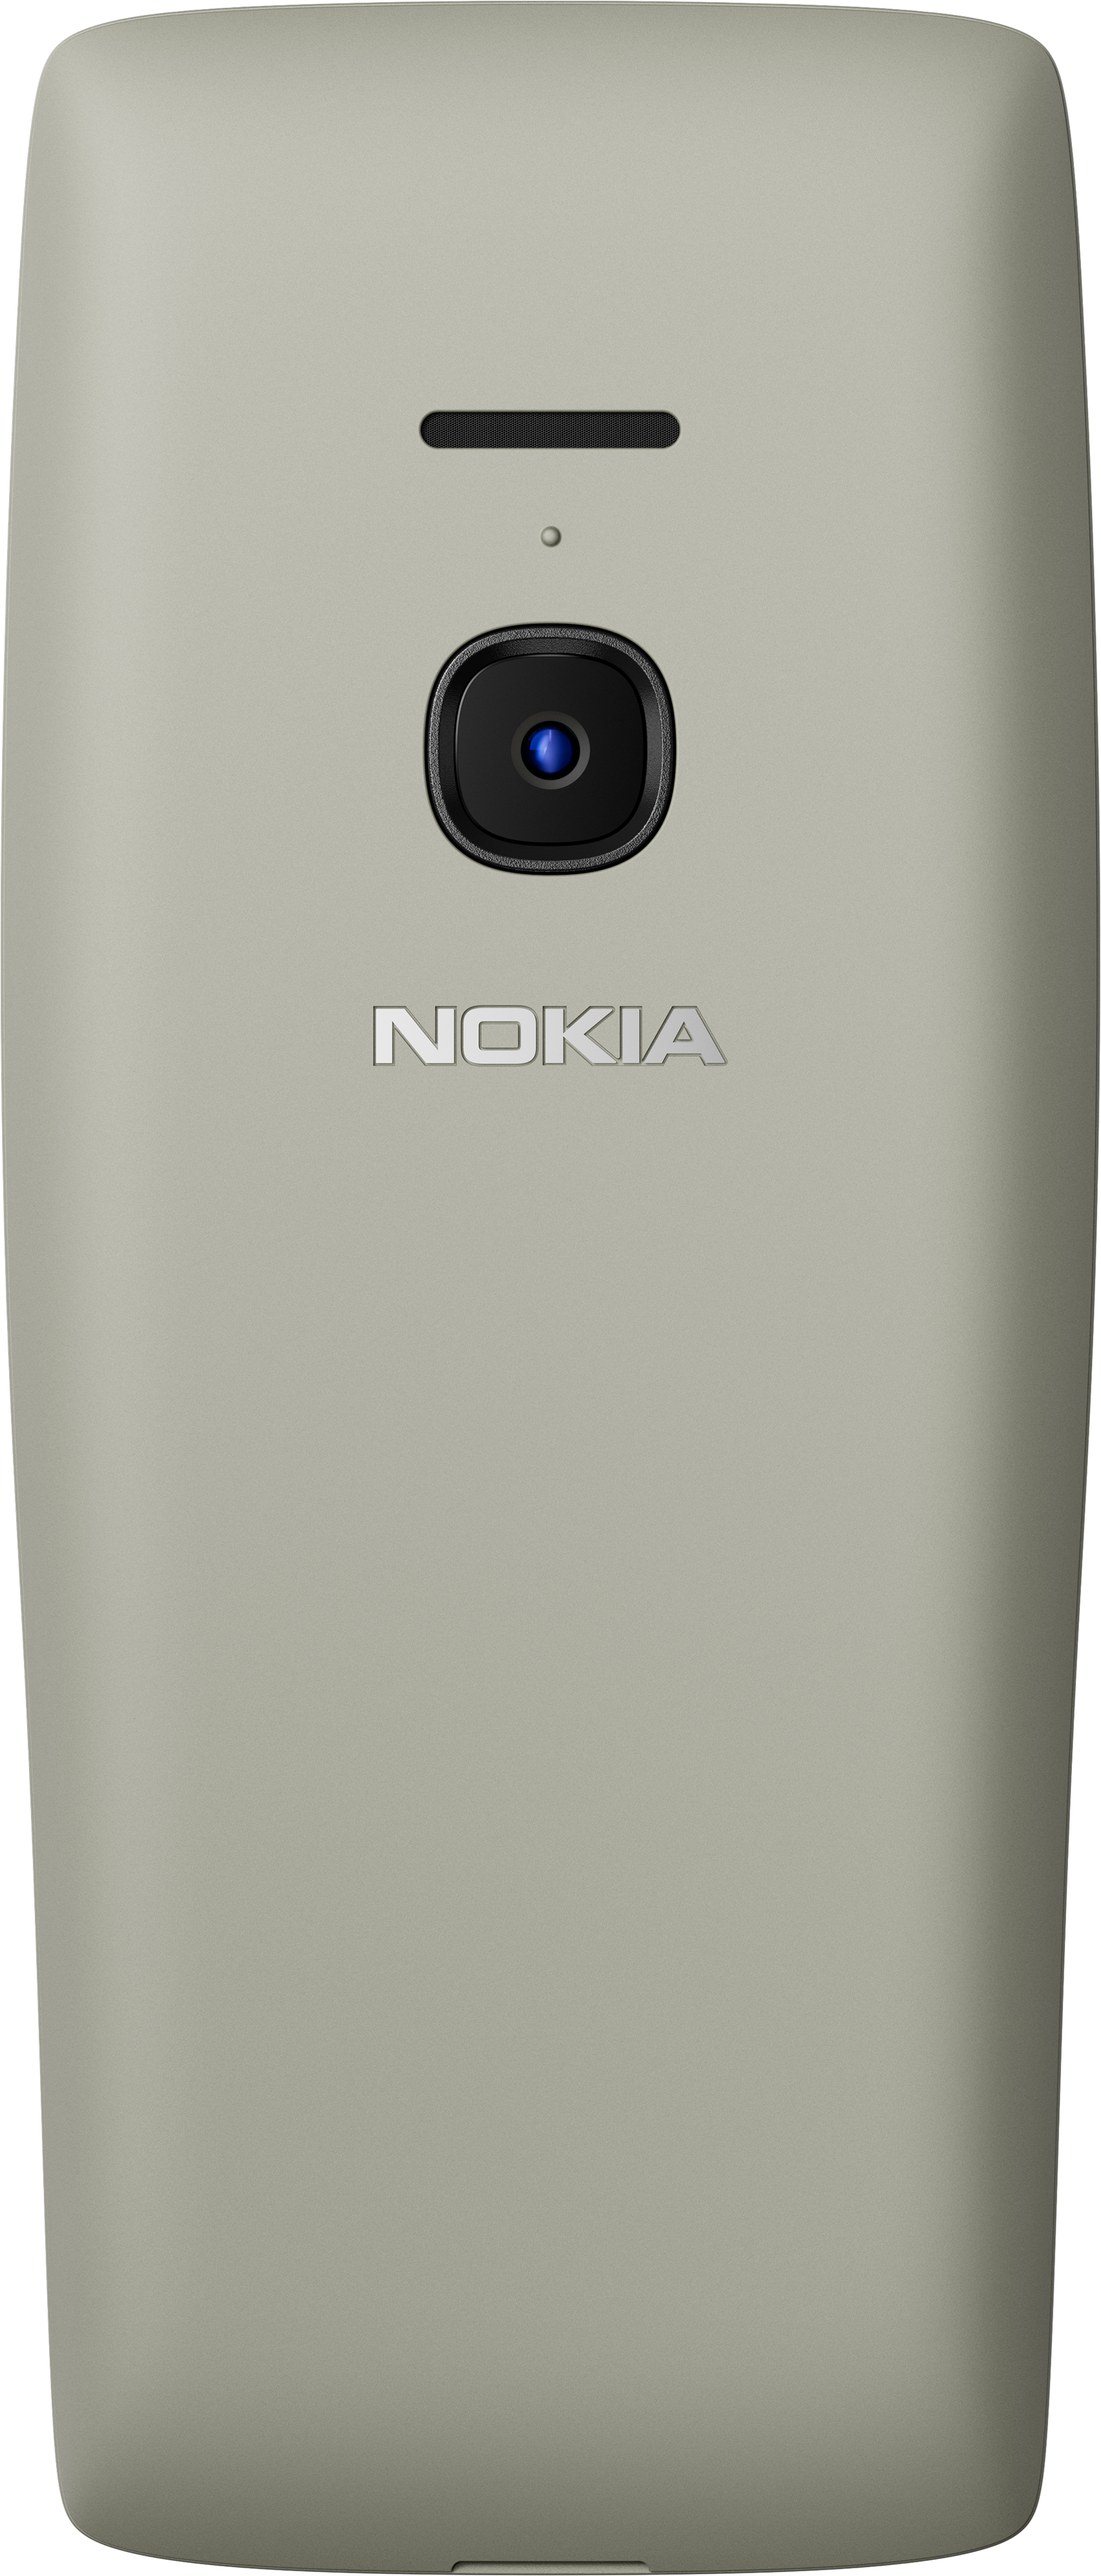 8210 4g. Nokia 8210 4g. Чехол для Nokia 8210 4g. Nokia Switch. Nokia 8210 4g характеристики.